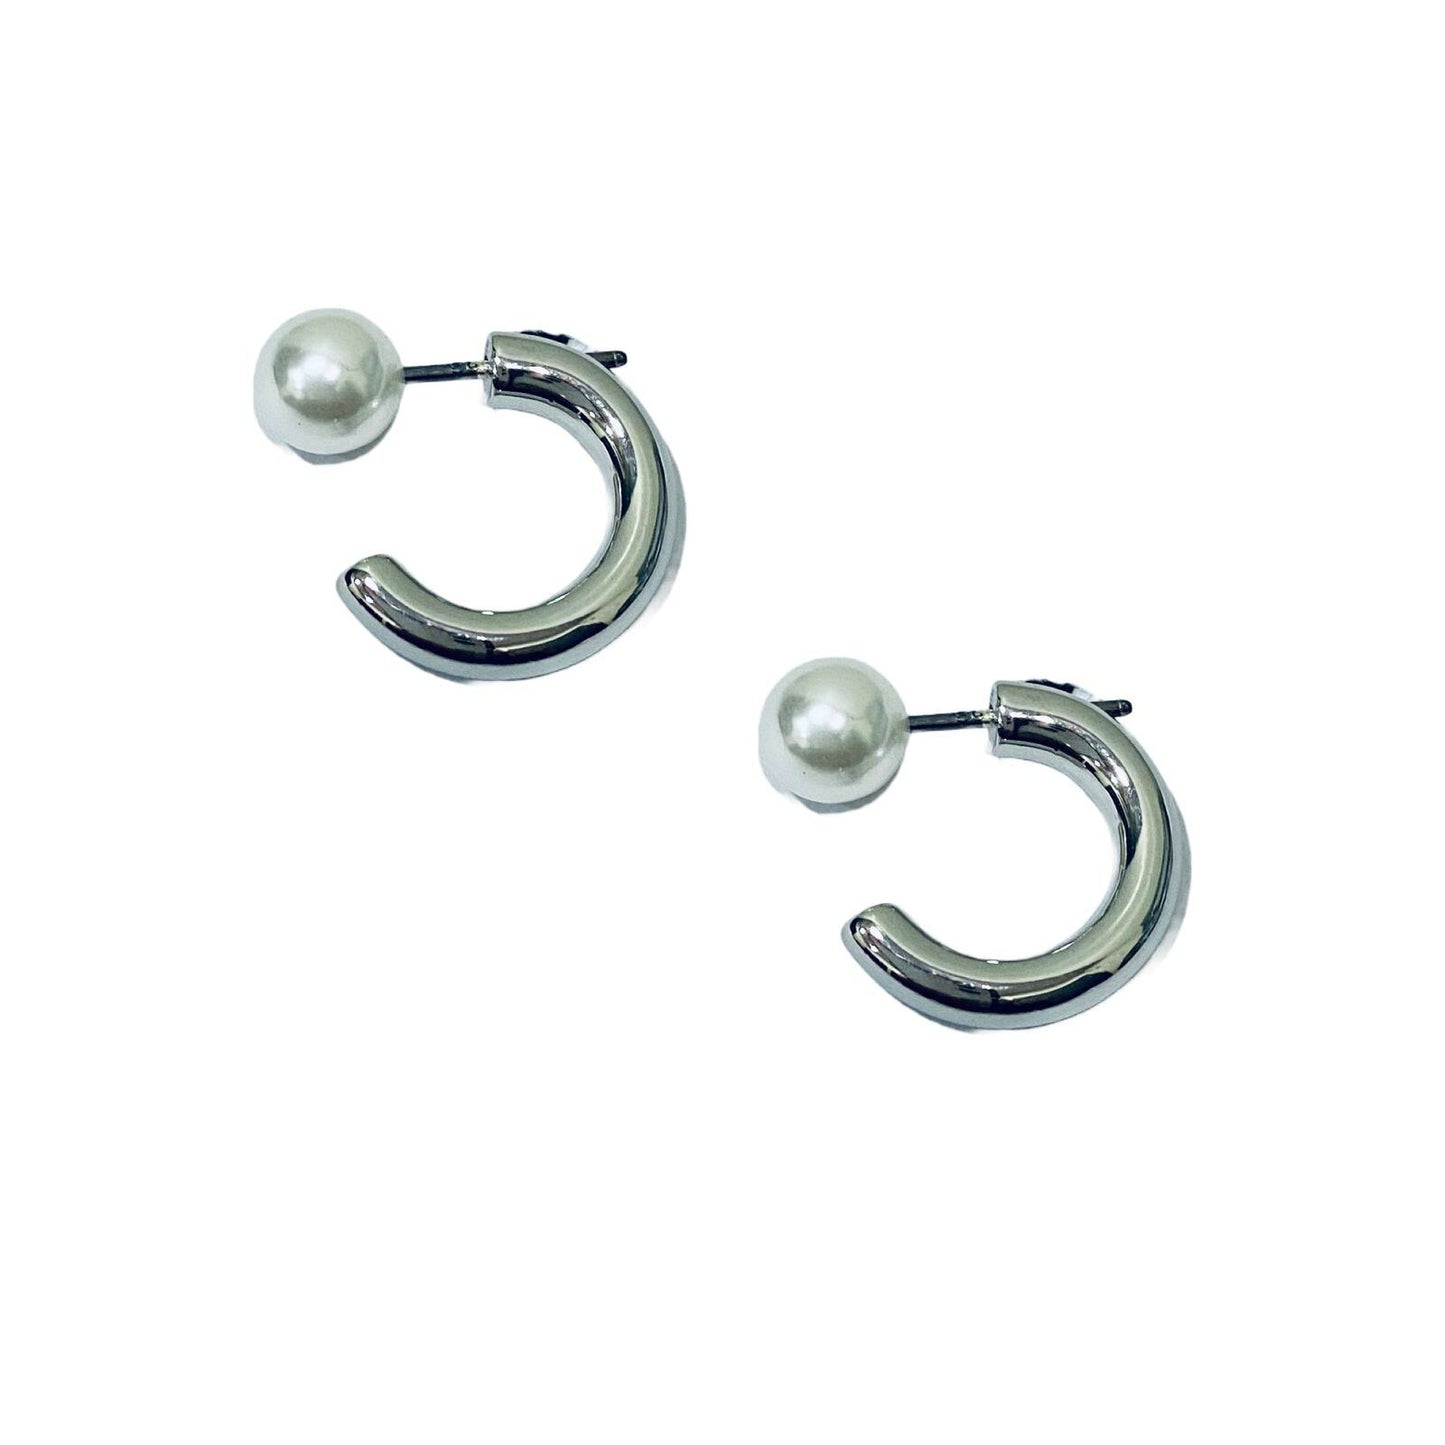 Imitation Earrings | Silver Pearl Earrings for Women | Artificial Jewelry